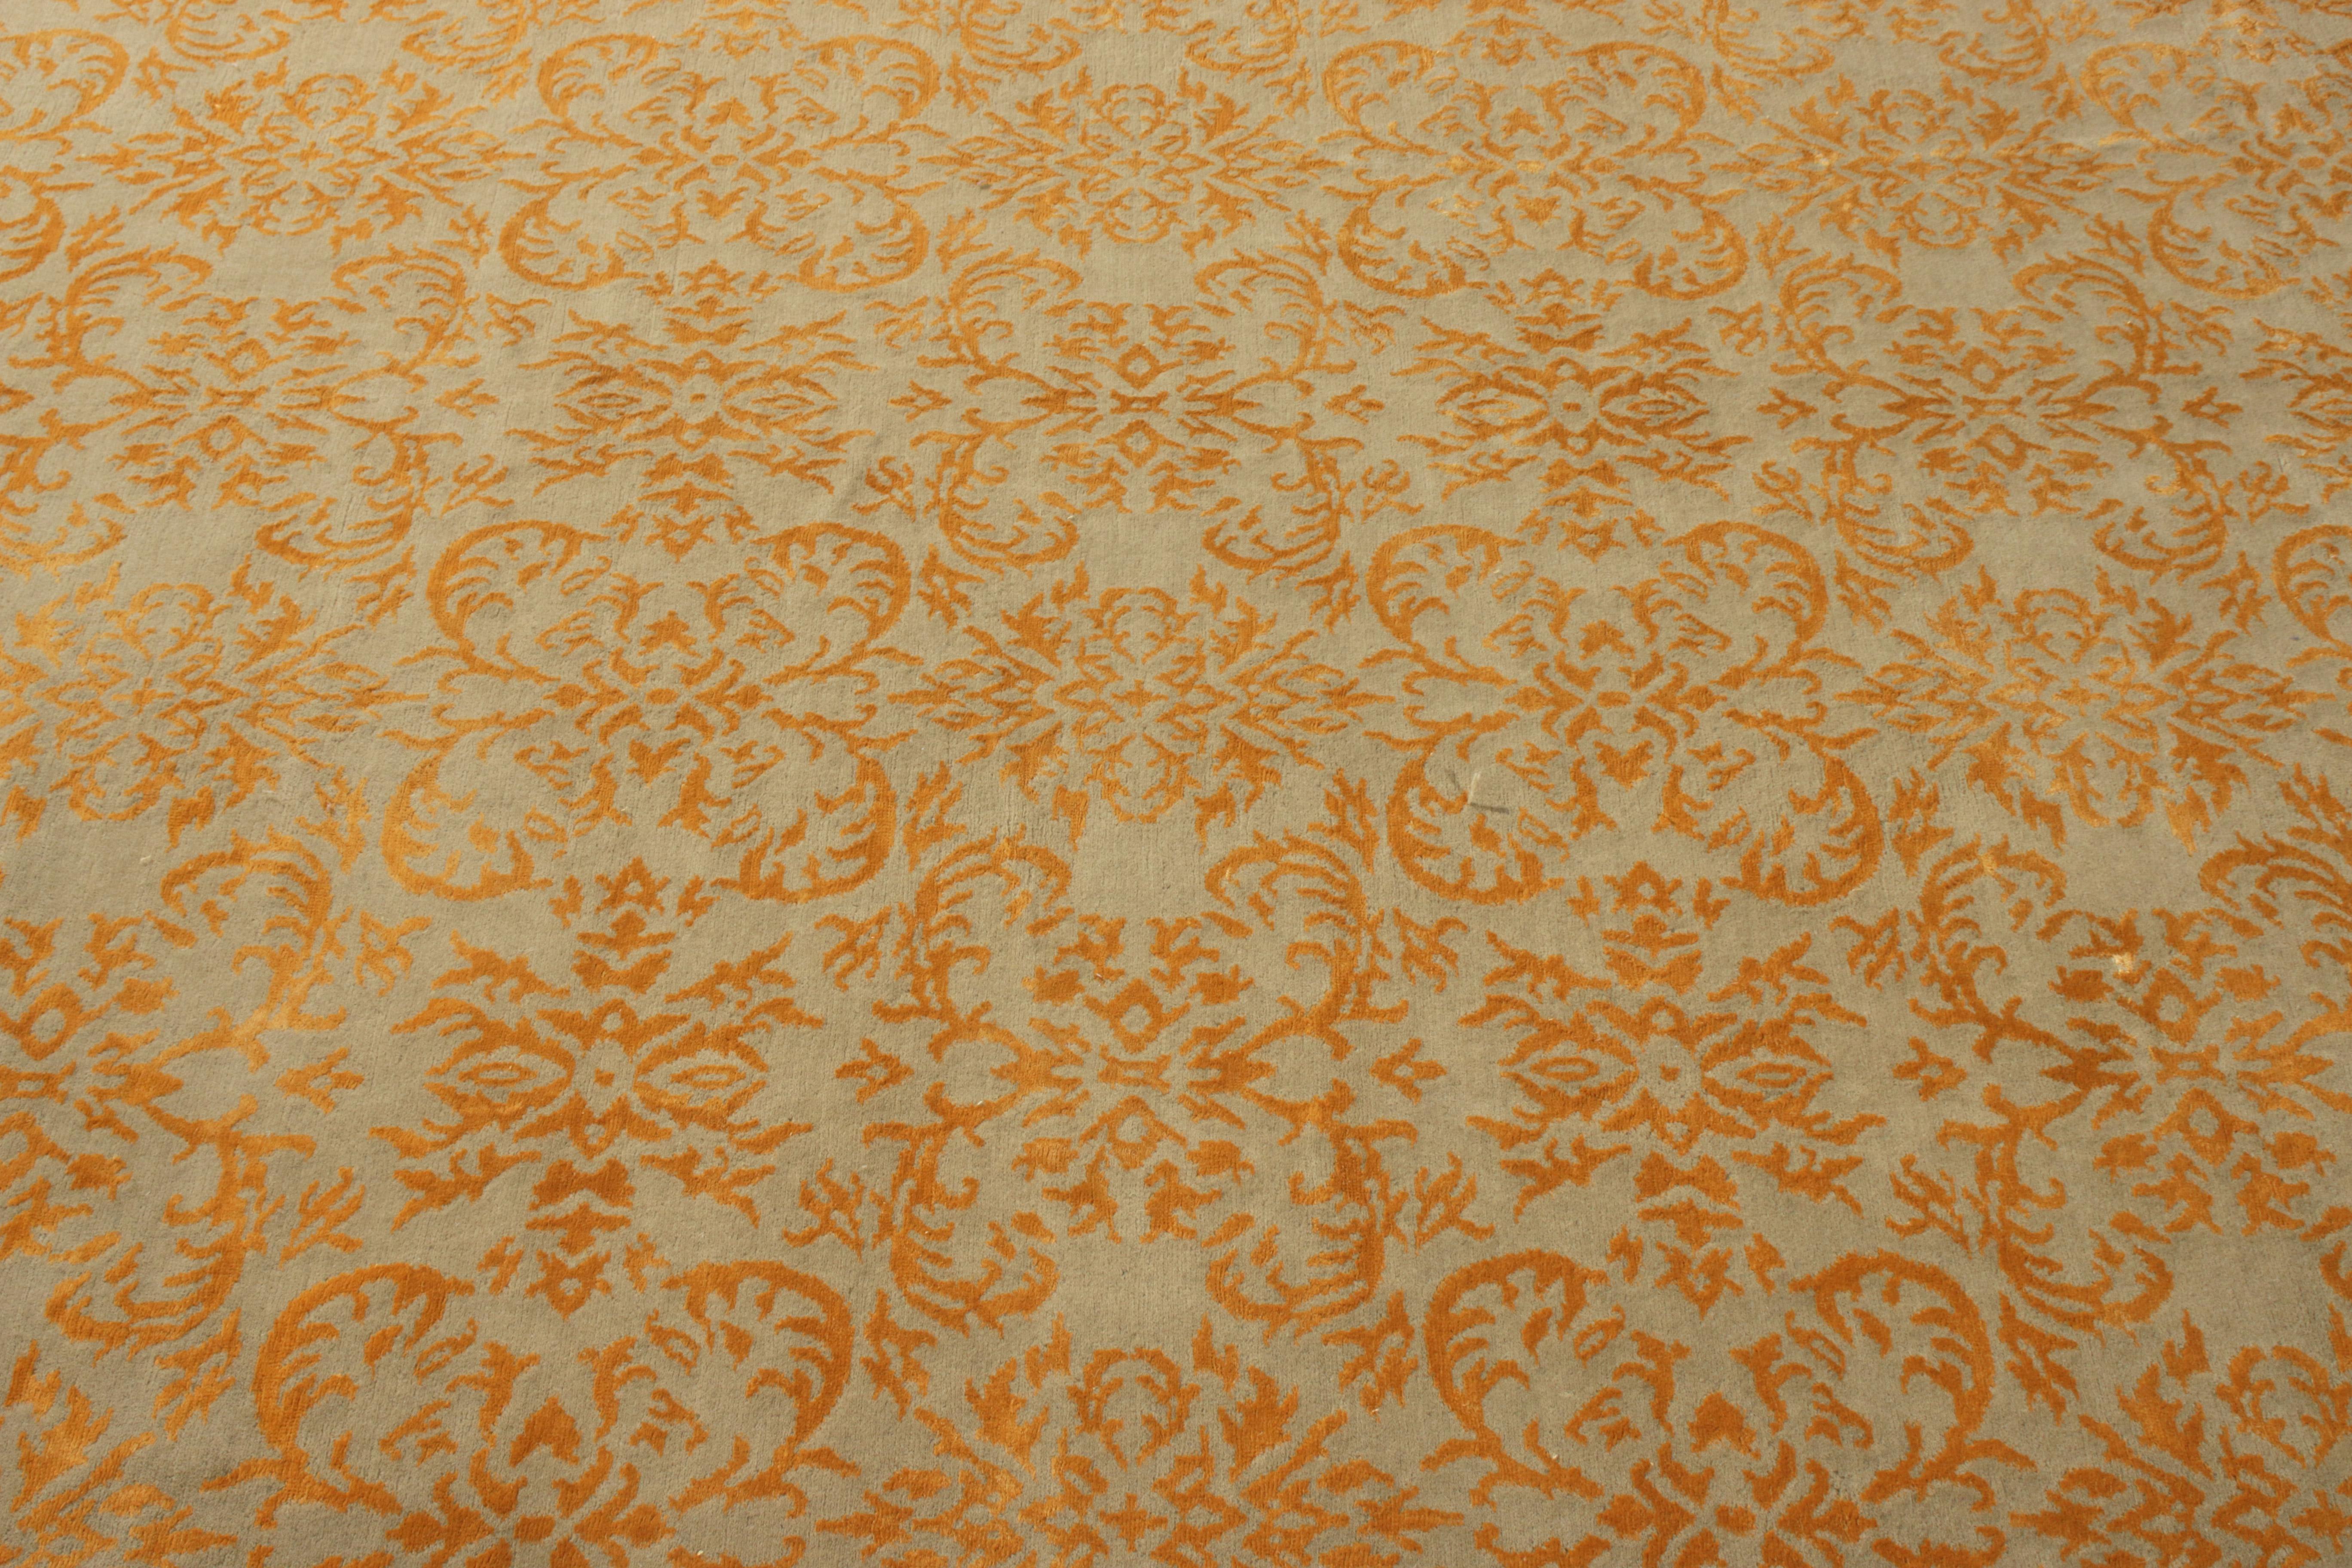 Espagnol Rug & Kilim's European Style Rug in Gold and Green Arabesque Pattern (tapis de style européen à motifs arabesques dorés et verts) en vente